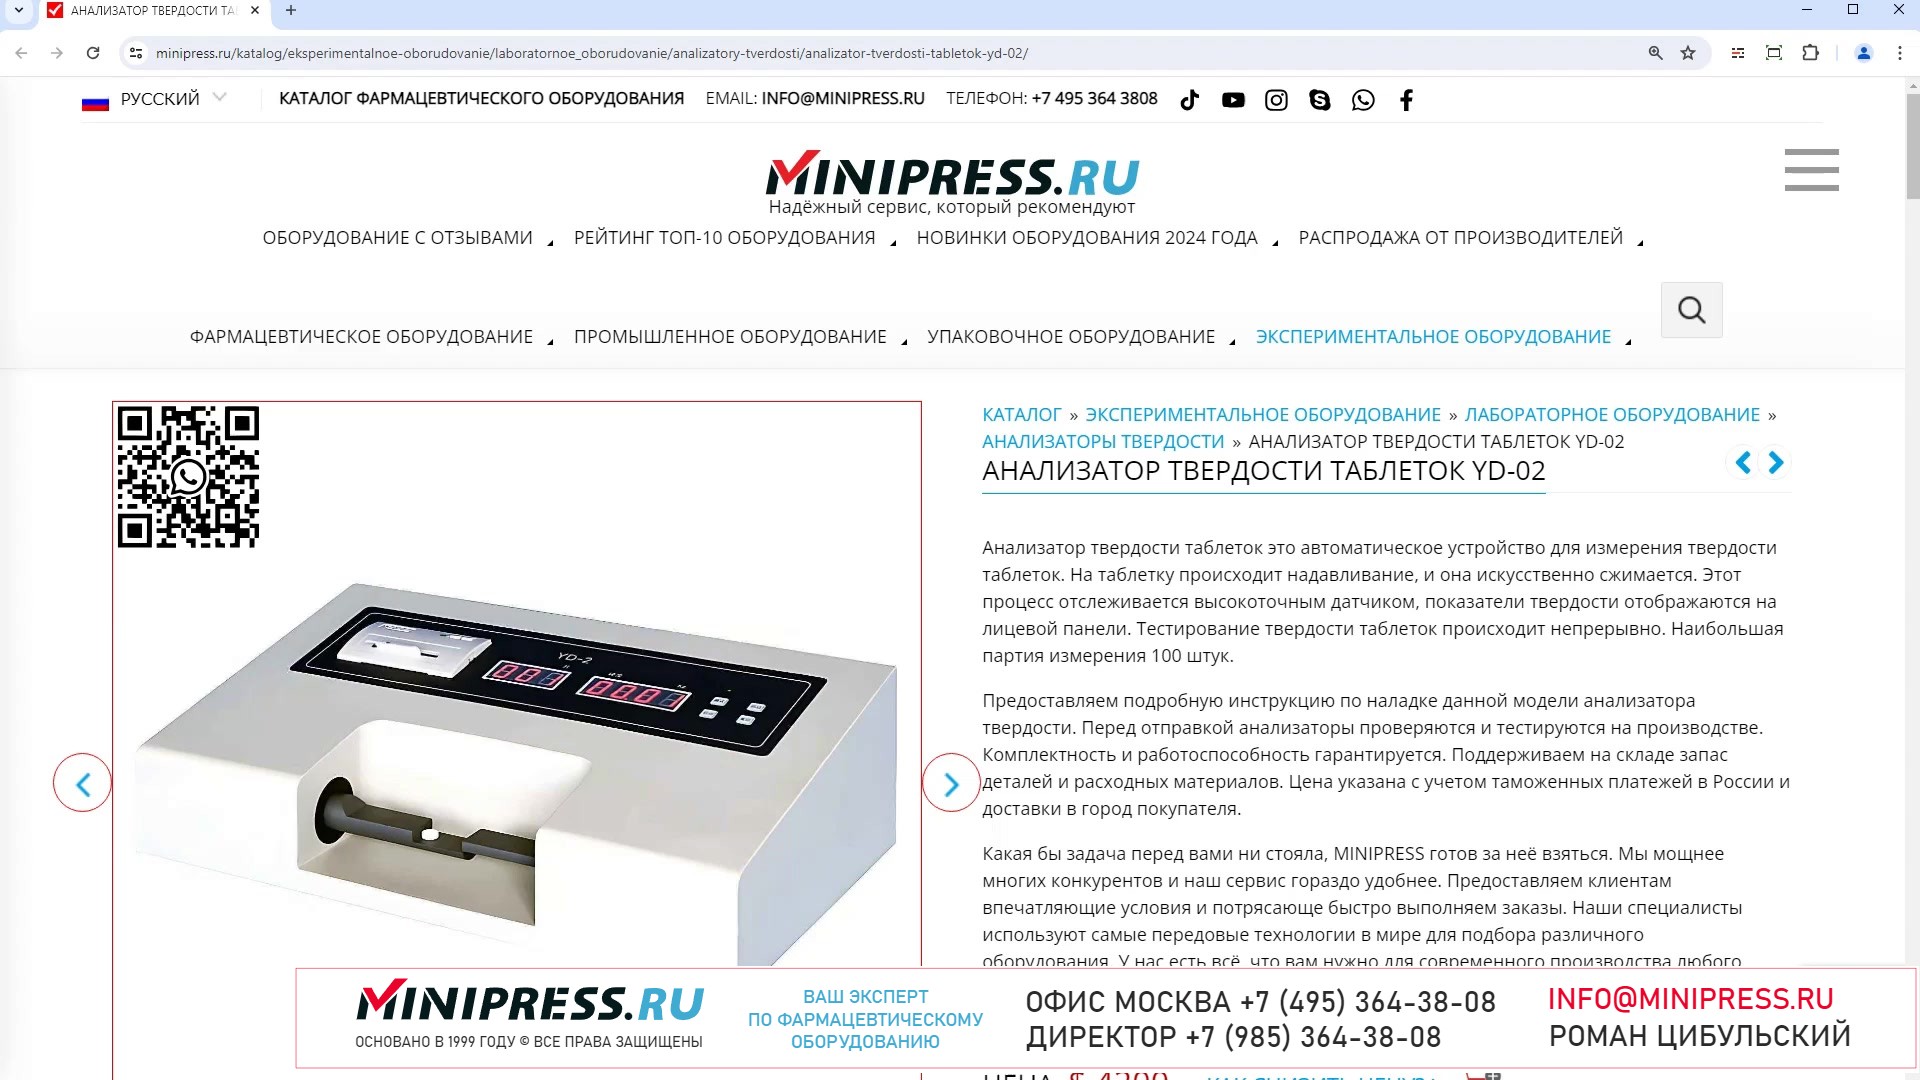 Minipress.ru Анализатор твердости таблеток YD-02